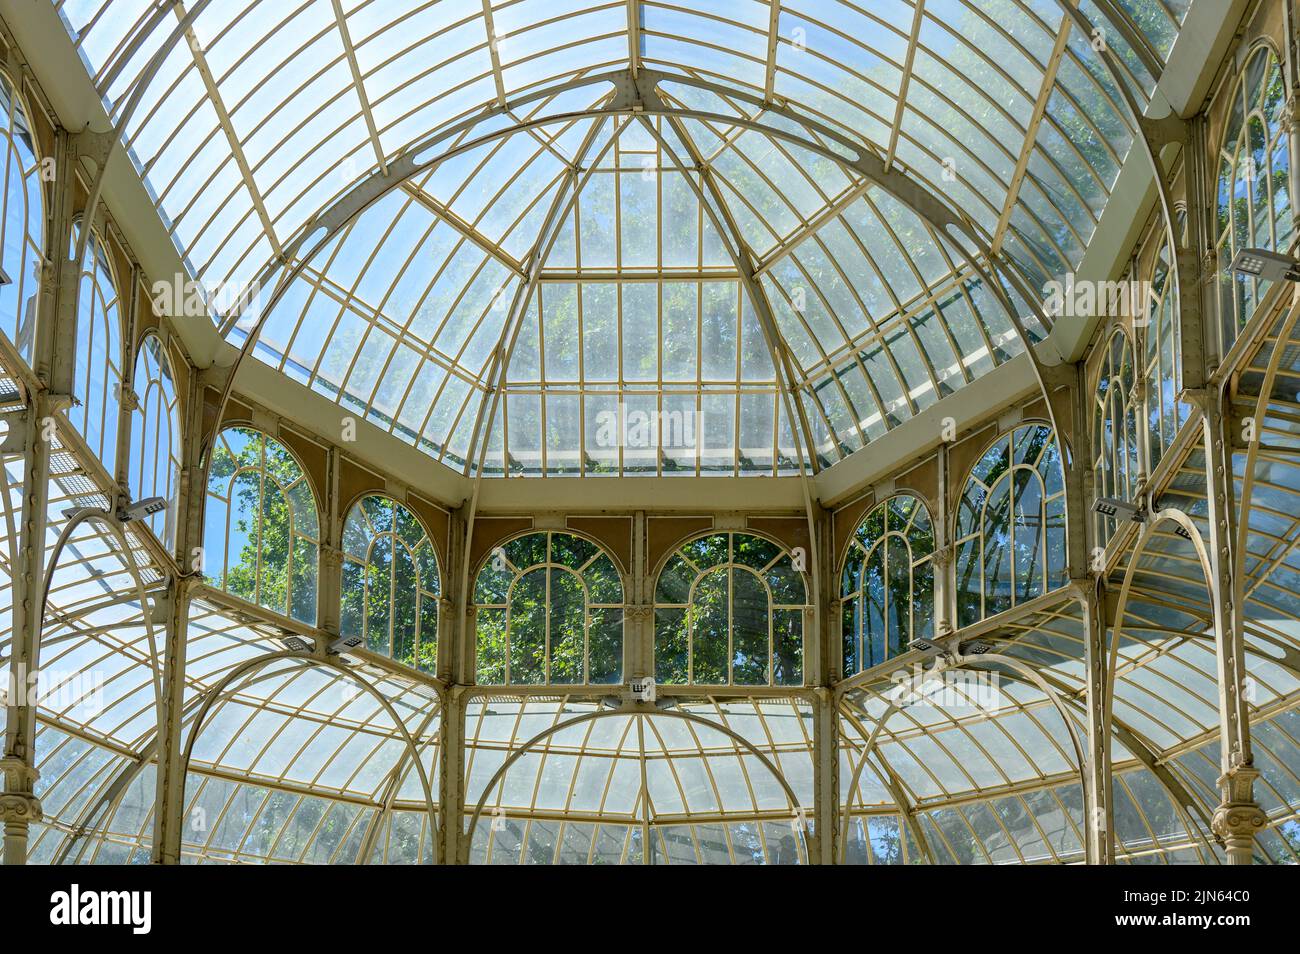 Detalle de arquitectura interior del Palacio de Cristal que se encuentra en el Parque del Buen Retiro. El famoso lugar es una atracción turística. Foto de stock